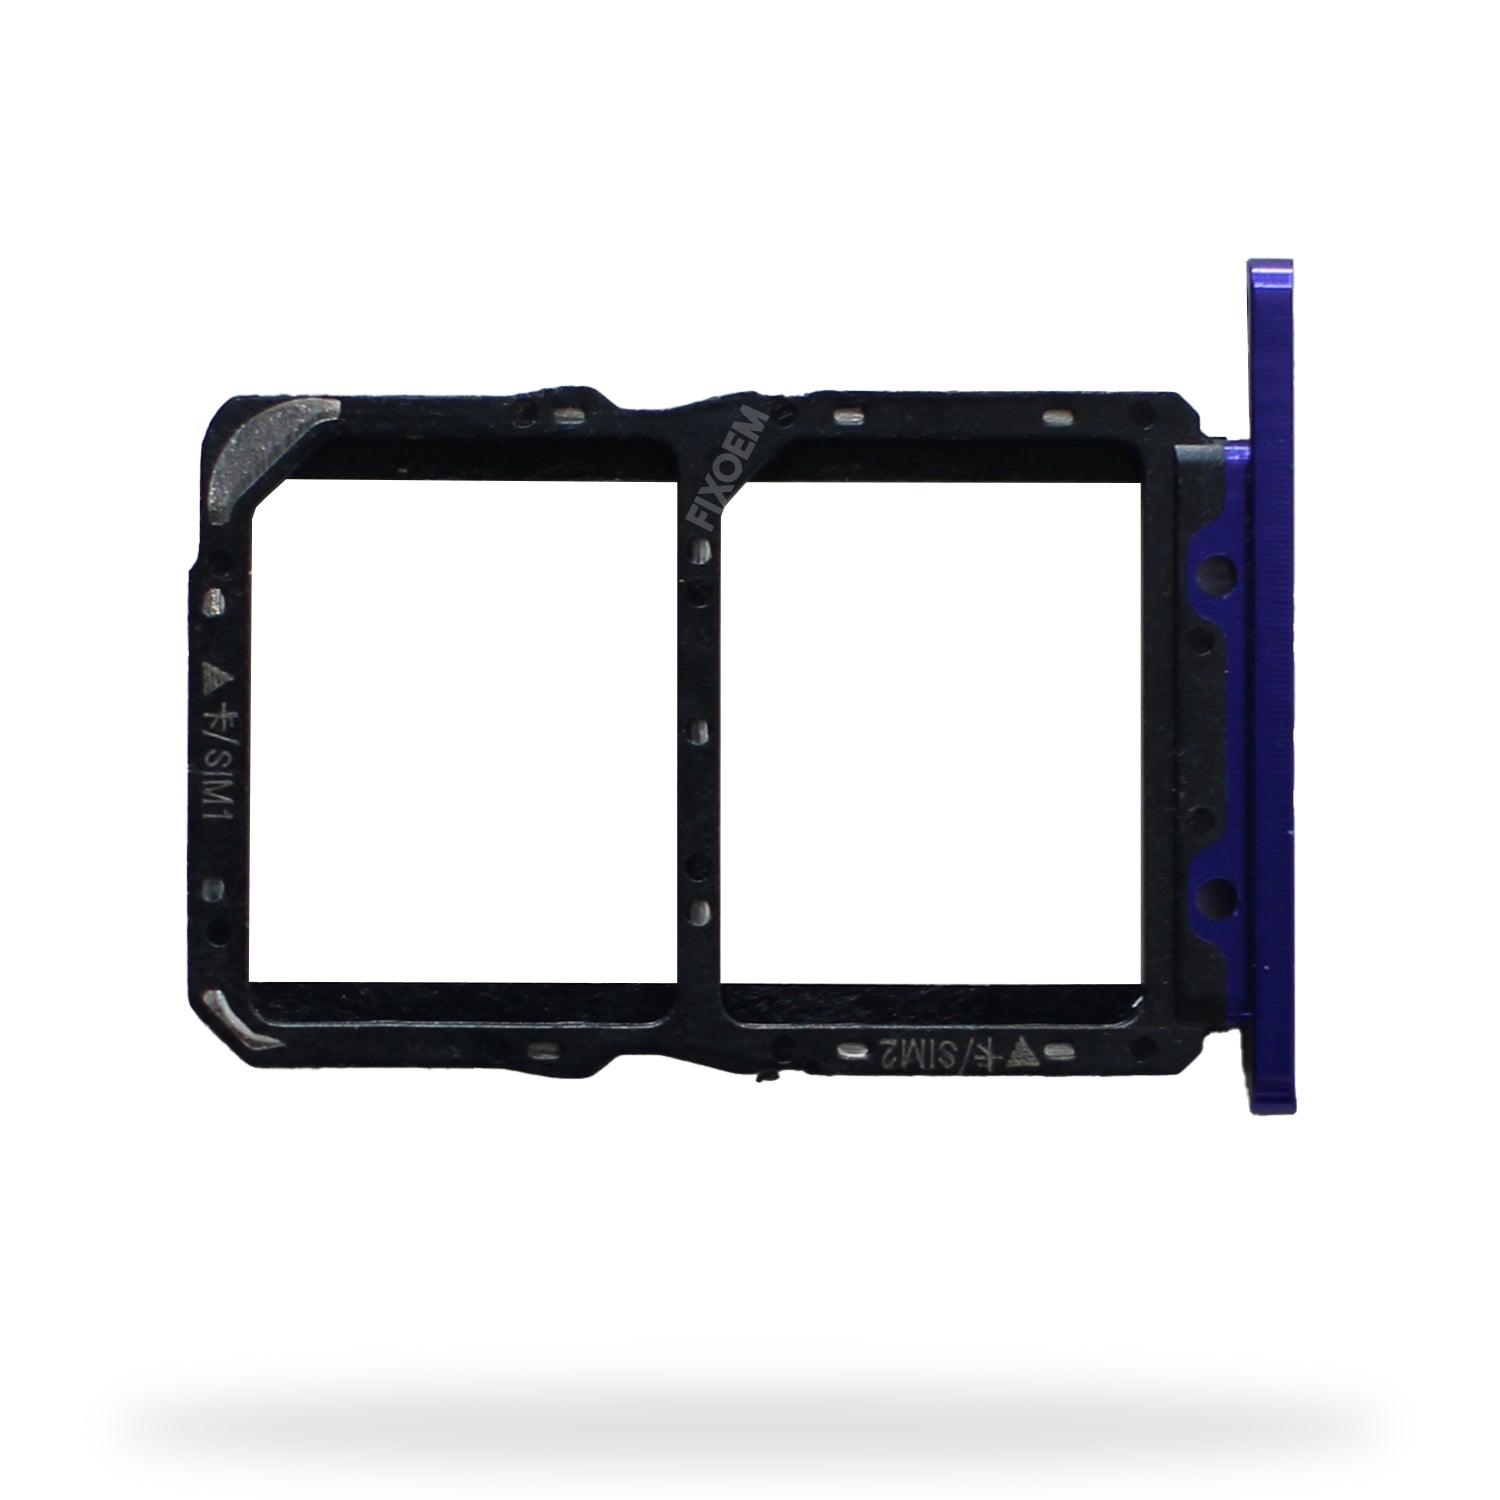 Charola Sim Huawei Nova 5T Tornasol Yal L21 a solo $ 50.00 Refaccion y puestos celulares, refurbish y microelectronica.- FixOEM